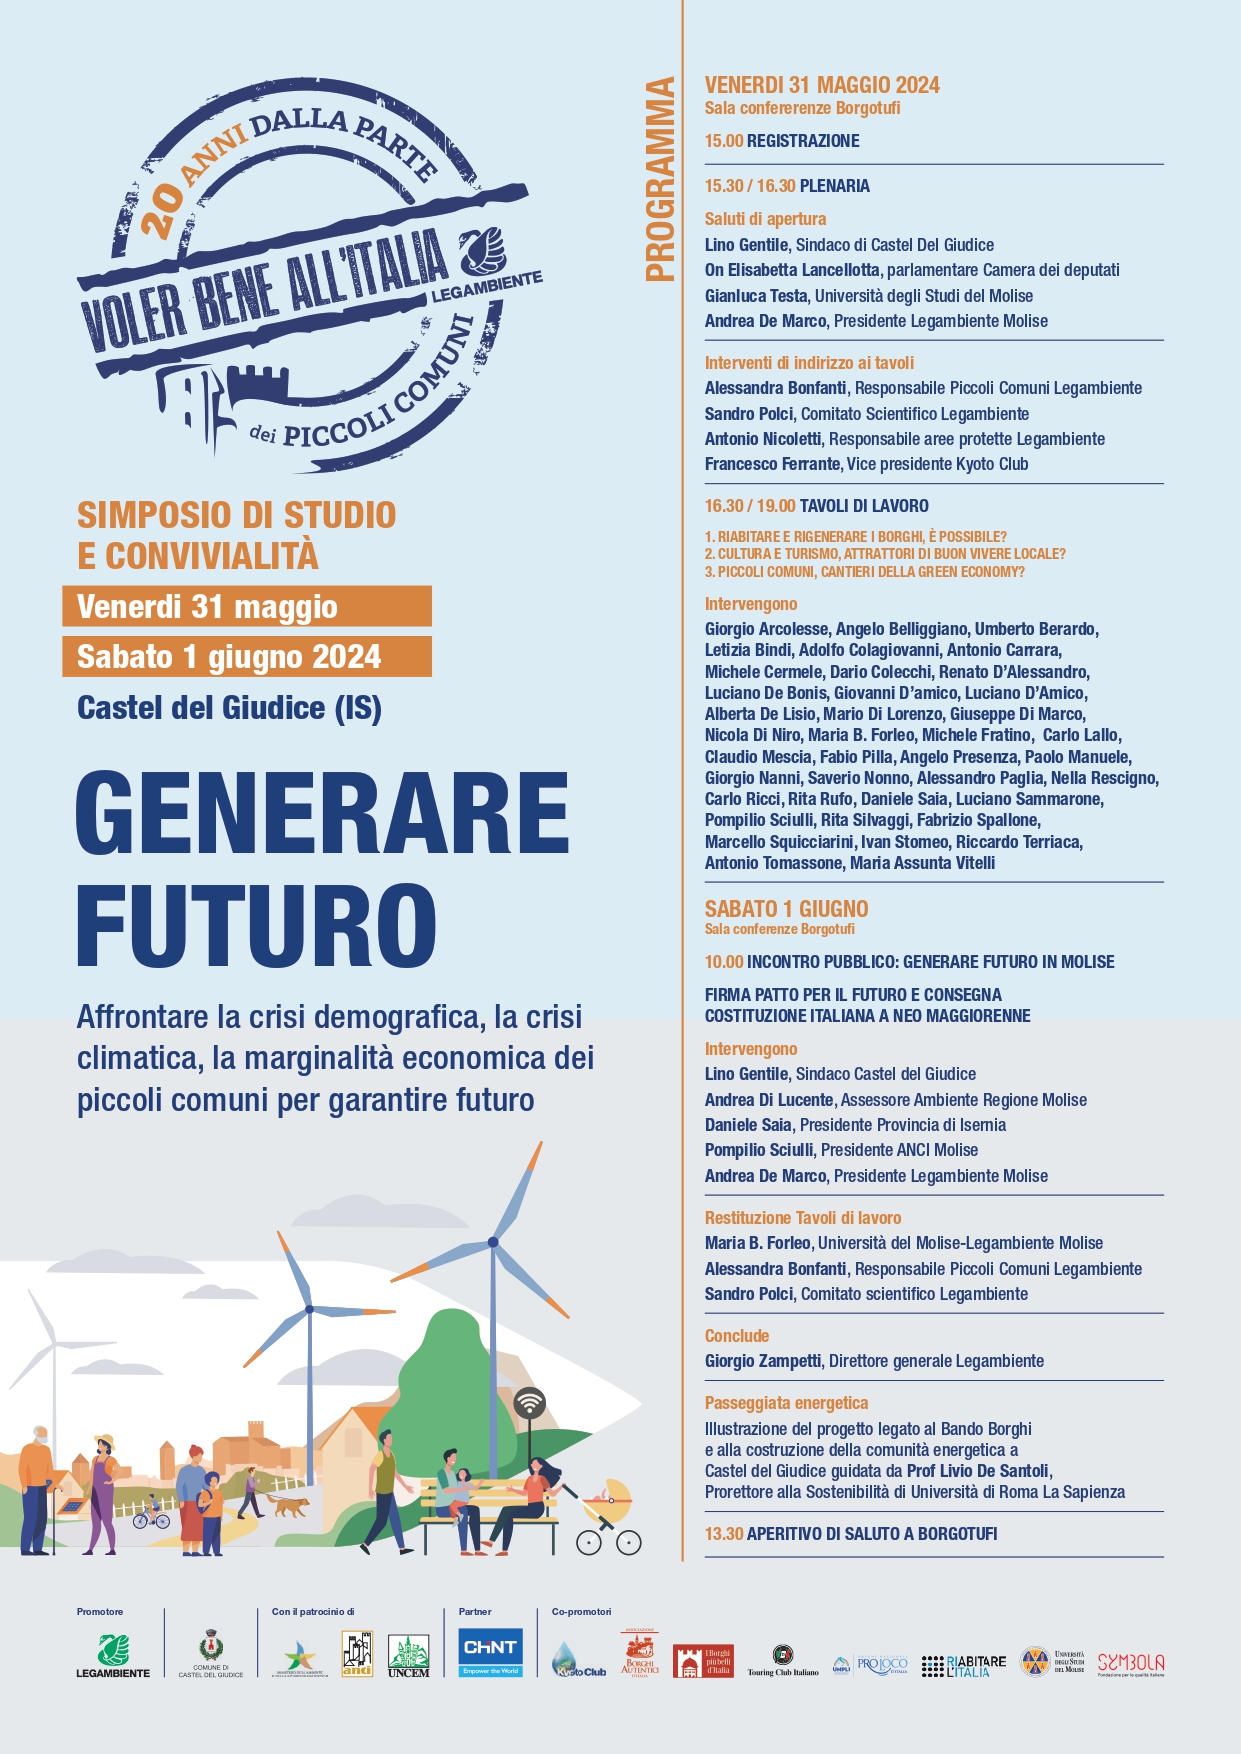  Voler Bene all’Italia, a Castel del Giudice si discute sul futuro sostenibile dei piccoli comuni 